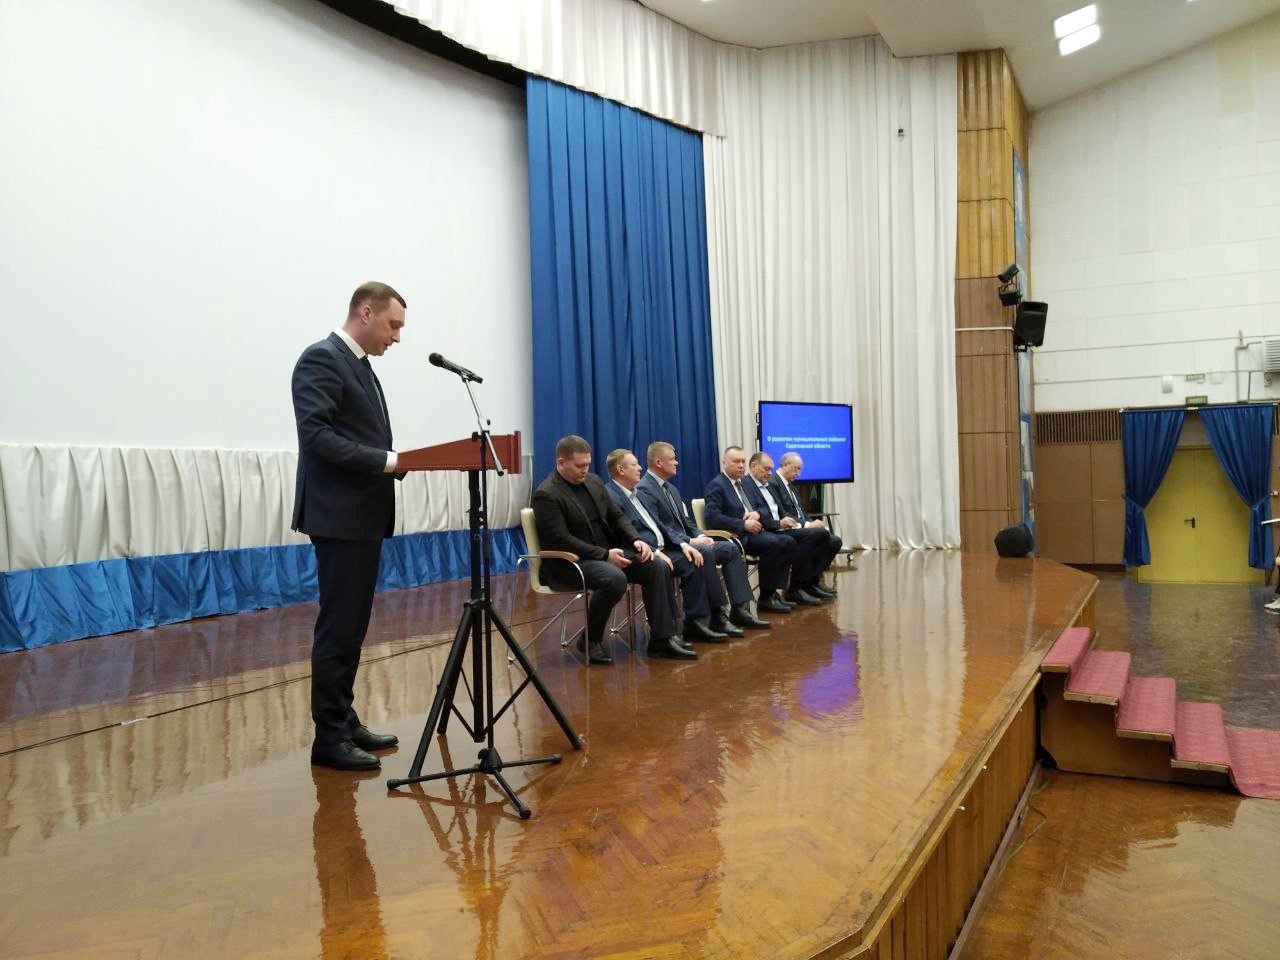 Губернатор Саратовской области провел встречу с главами районов Саратовской области по вопросу развития муниципальных районов Саратовской области.